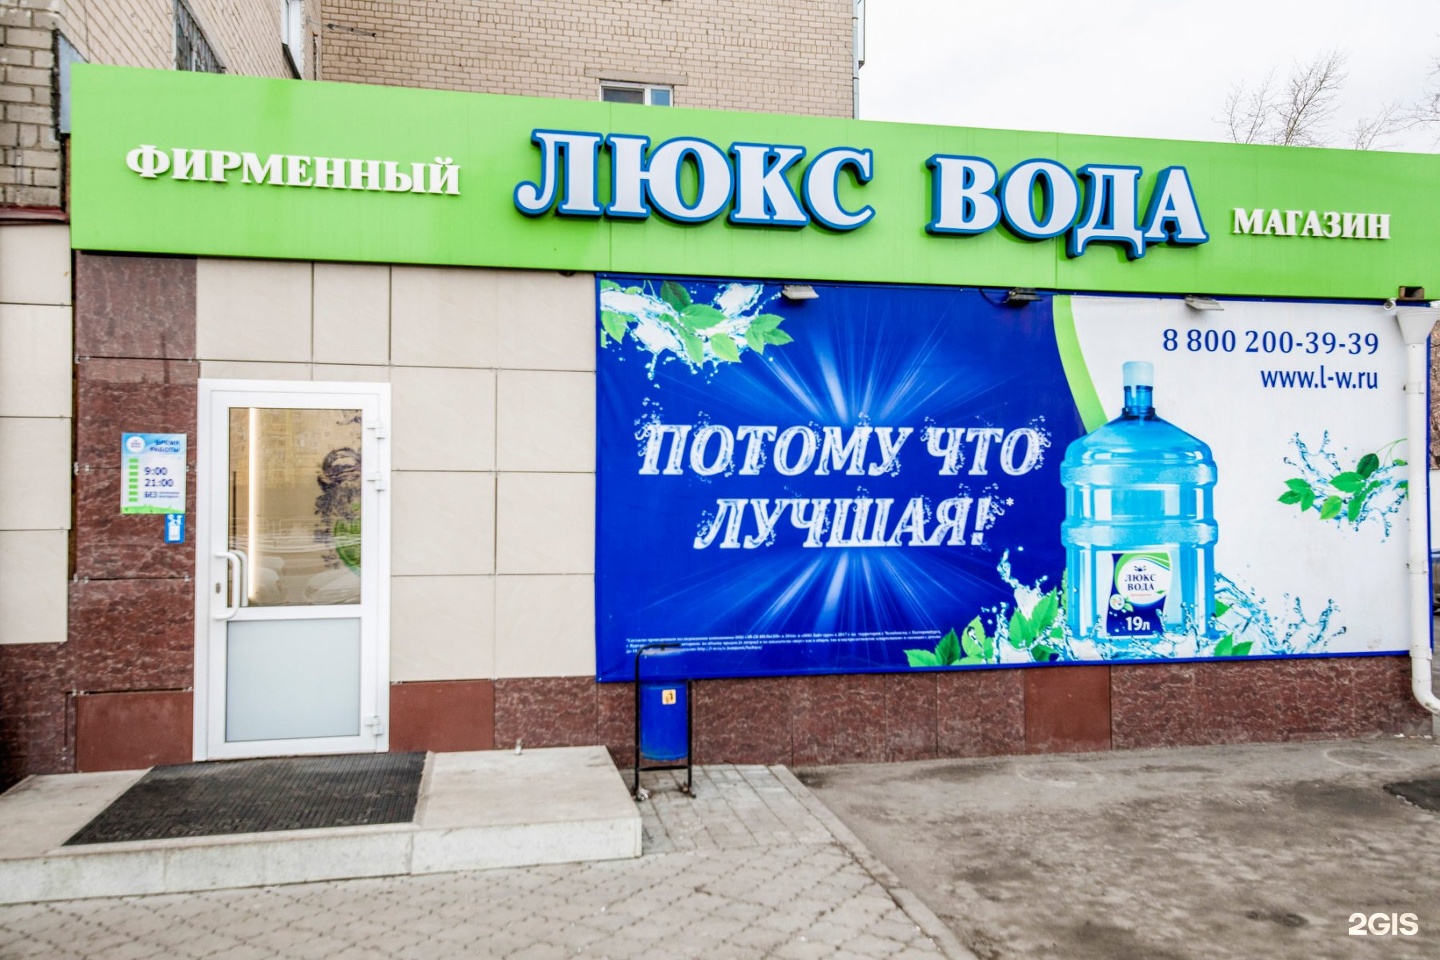 Заказать воду в челябинске. Магазин Люкс вода в Челябинске. Люкс вода магазины. Люкс вода вывеска. Люкс вода фото.